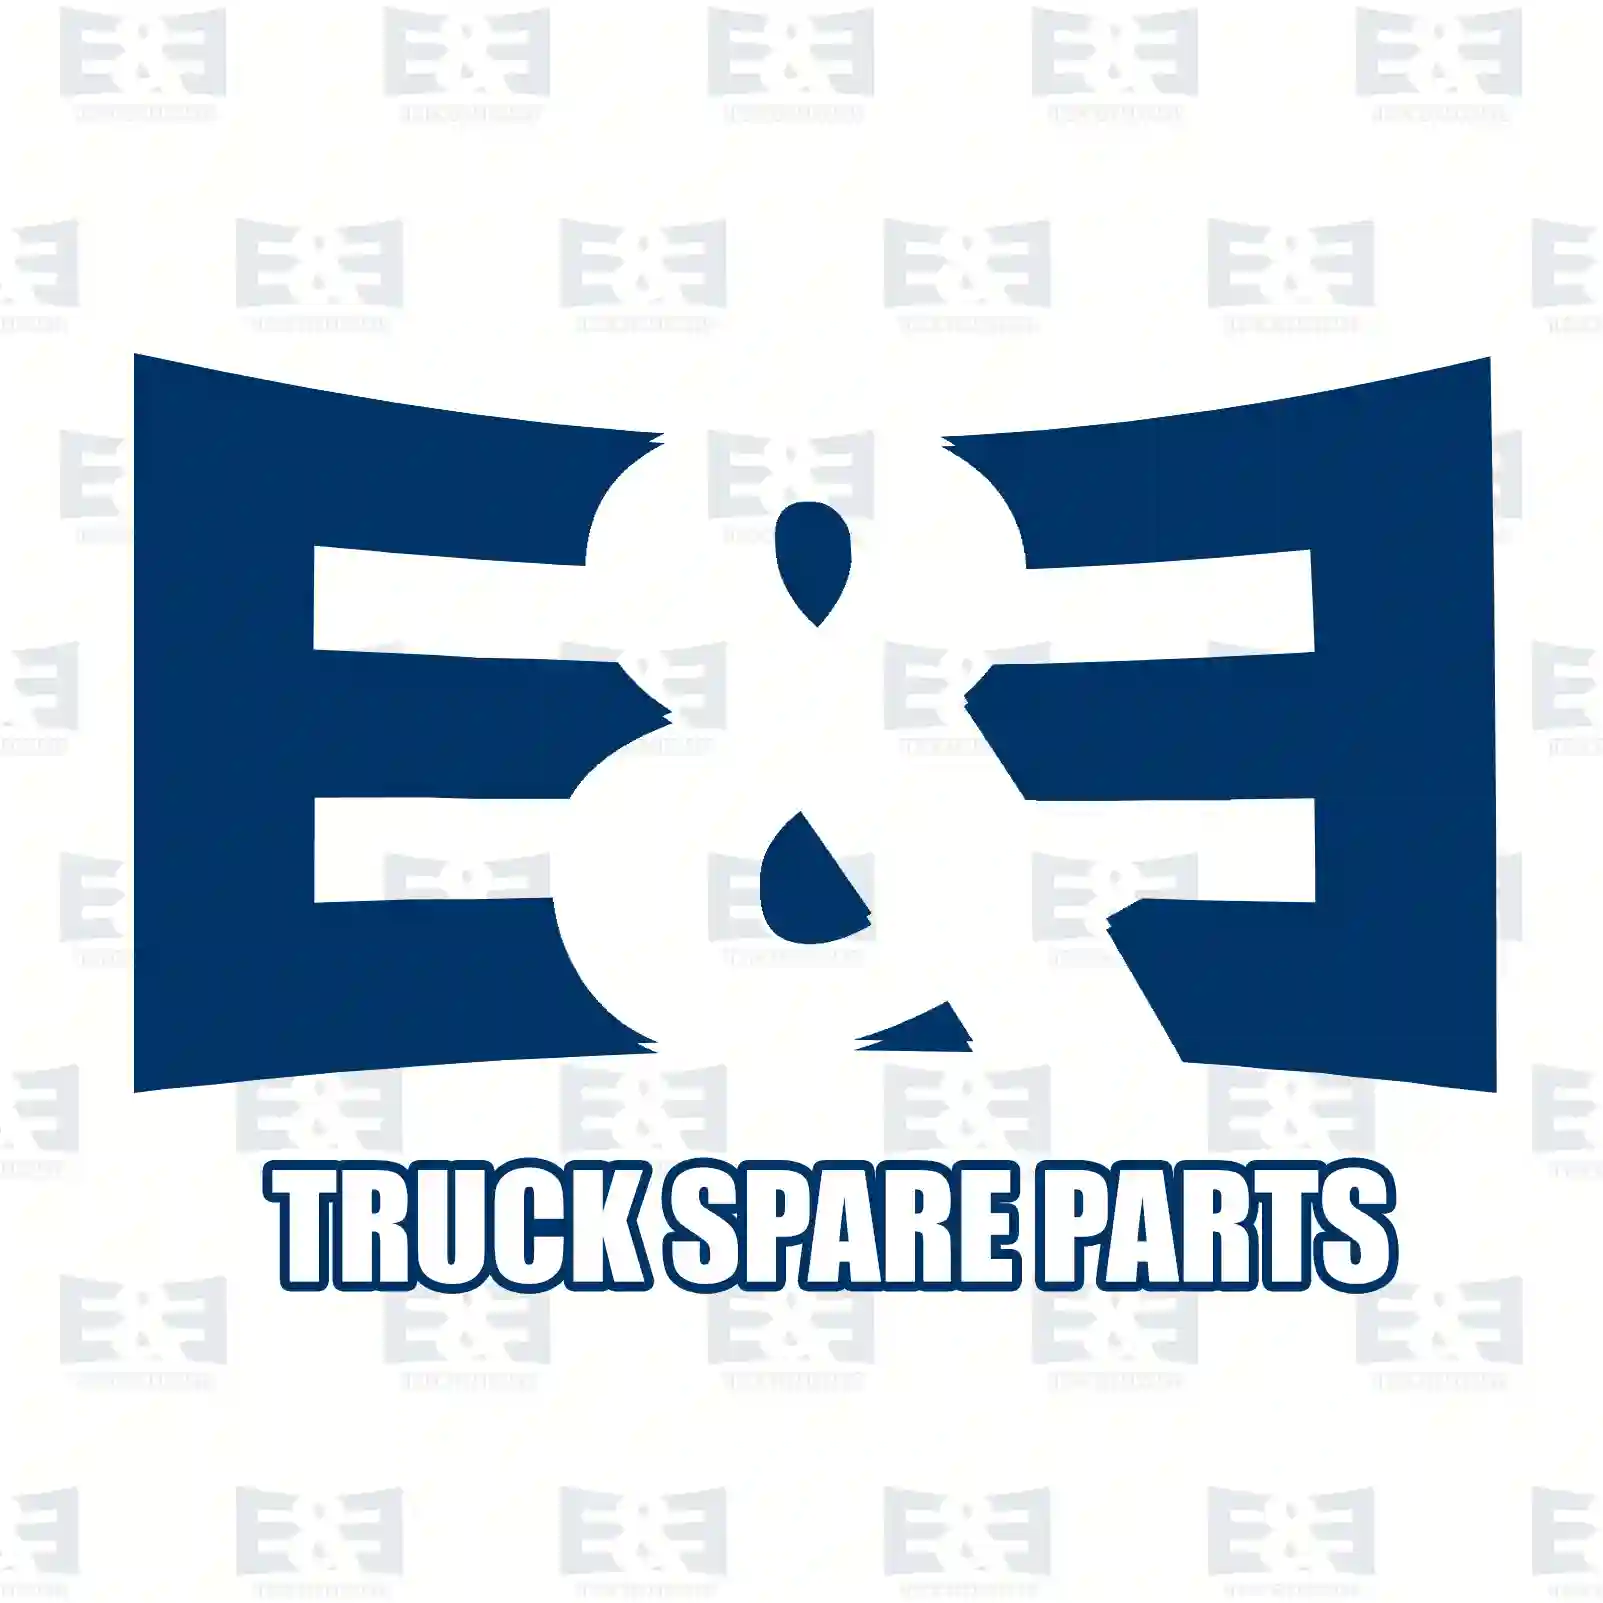 Frame, door handle, right, 2E2289394, 1486798 ||  2E2289394 E&E Truck Spare Parts | Truck Spare Parts, Auotomotive Spare Parts Frame, door handle, right, 2E2289394, 1486798 ||  2E2289394 E&E Truck Spare Parts | Truck Spare Parts, Auotomotive Spare Parts